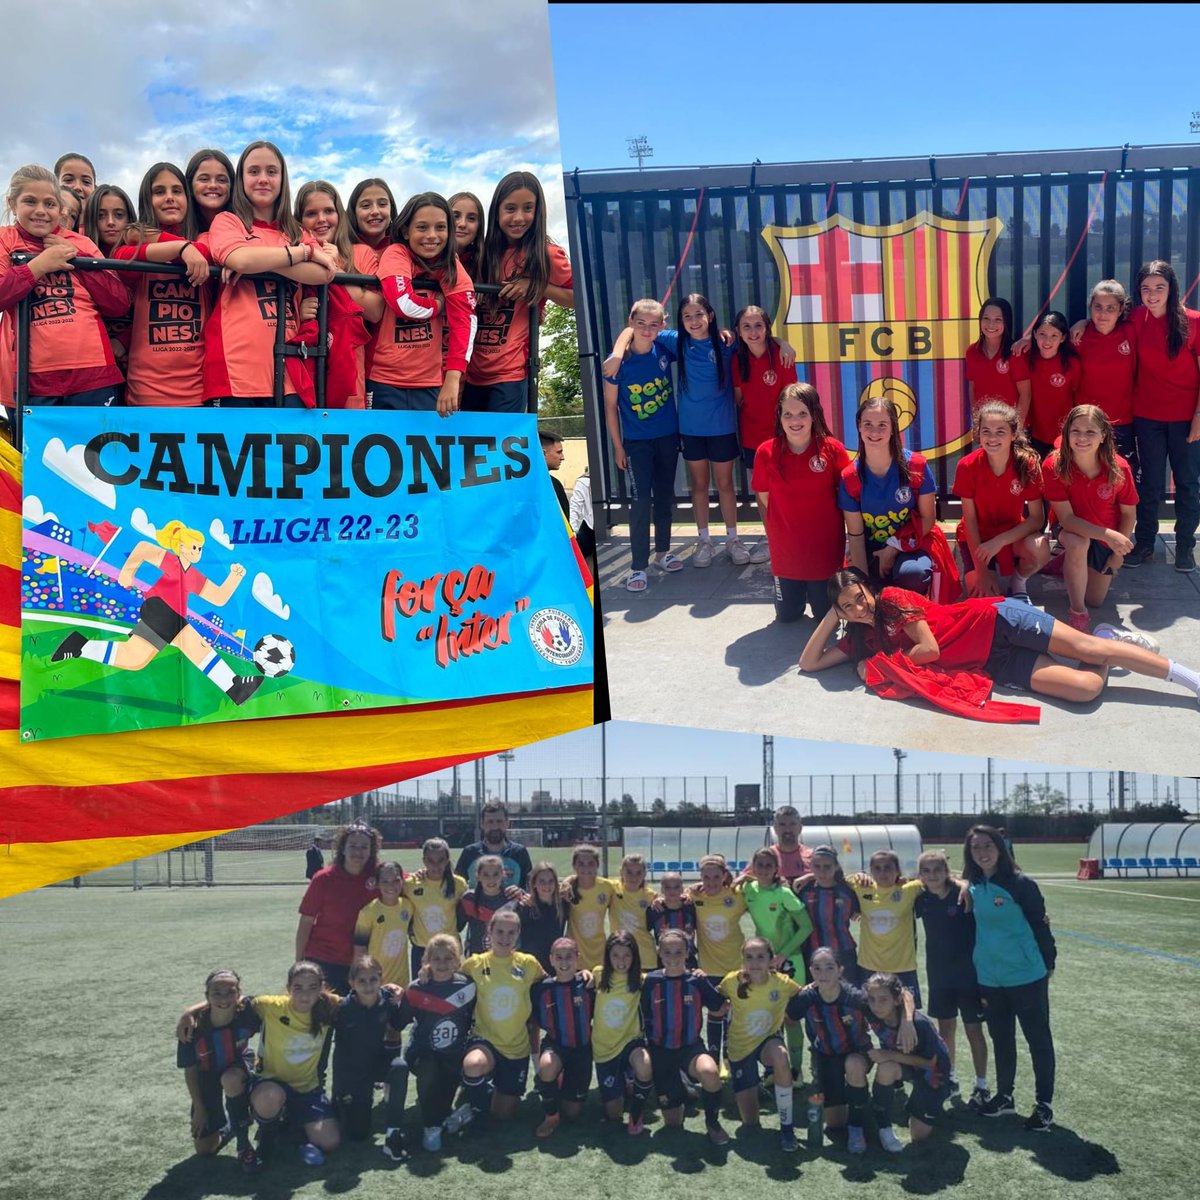 Des de l'Ajuntament de #Torregrossa, volem donar l'enhorabona a l'equip aleví femení de l'Intercomarcal pel partit d'avui! No tots els dies es juga a la ciutat esportiva del Barça! ⚽⚽⚽ #MagradaTorregrossa